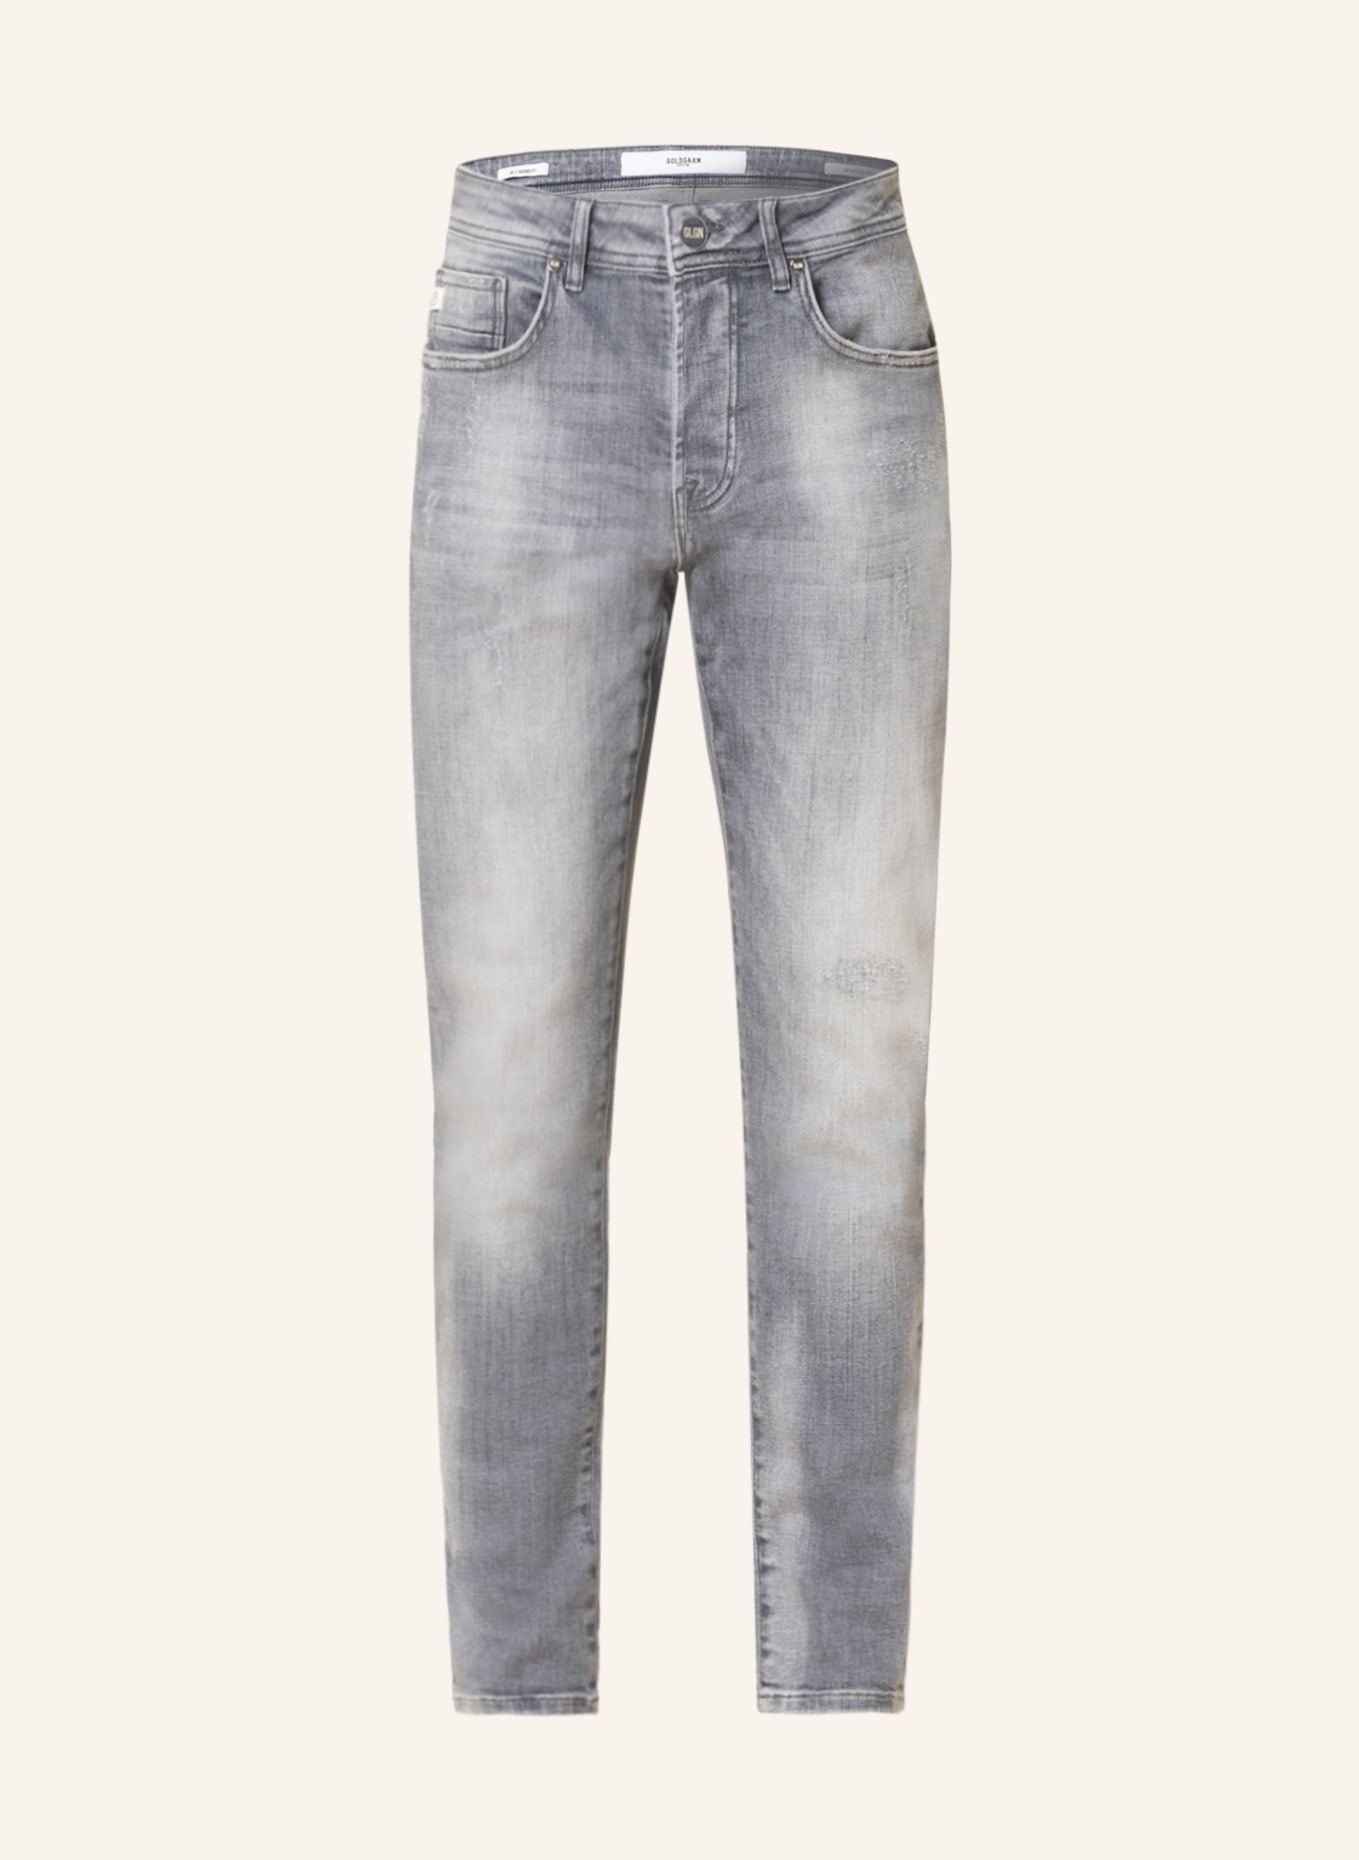 GOLDGARN DENIM Destroyed jeans U2 Tapered fit, Color: 1050 Light Grey (Image 1)